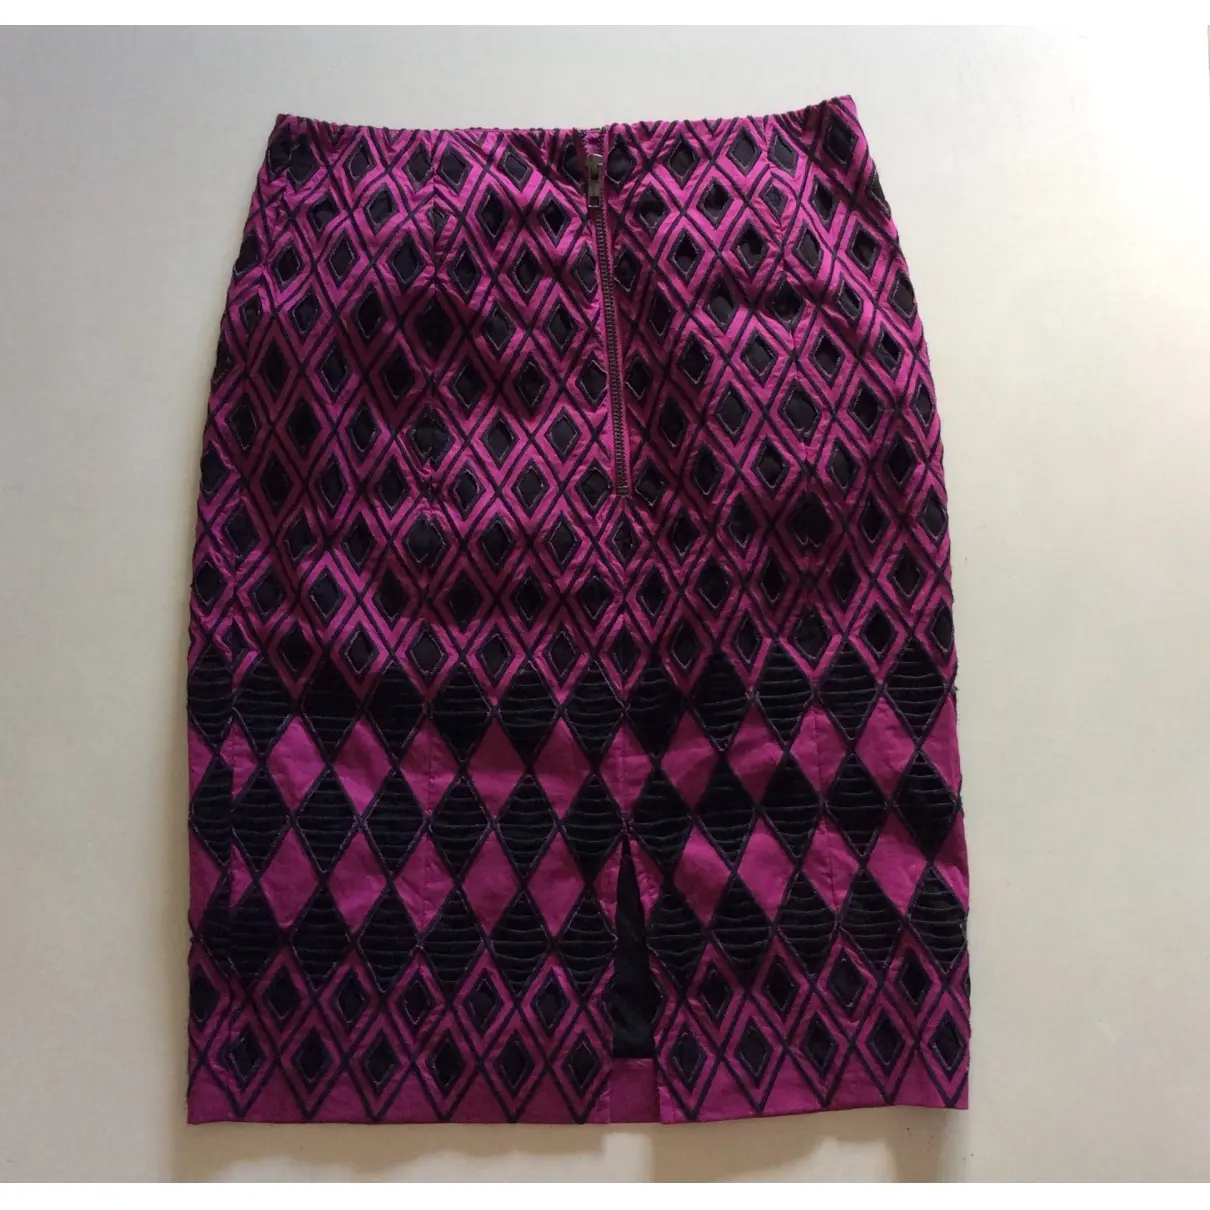 Buy Catherine Malandrino Mid-length skirt online